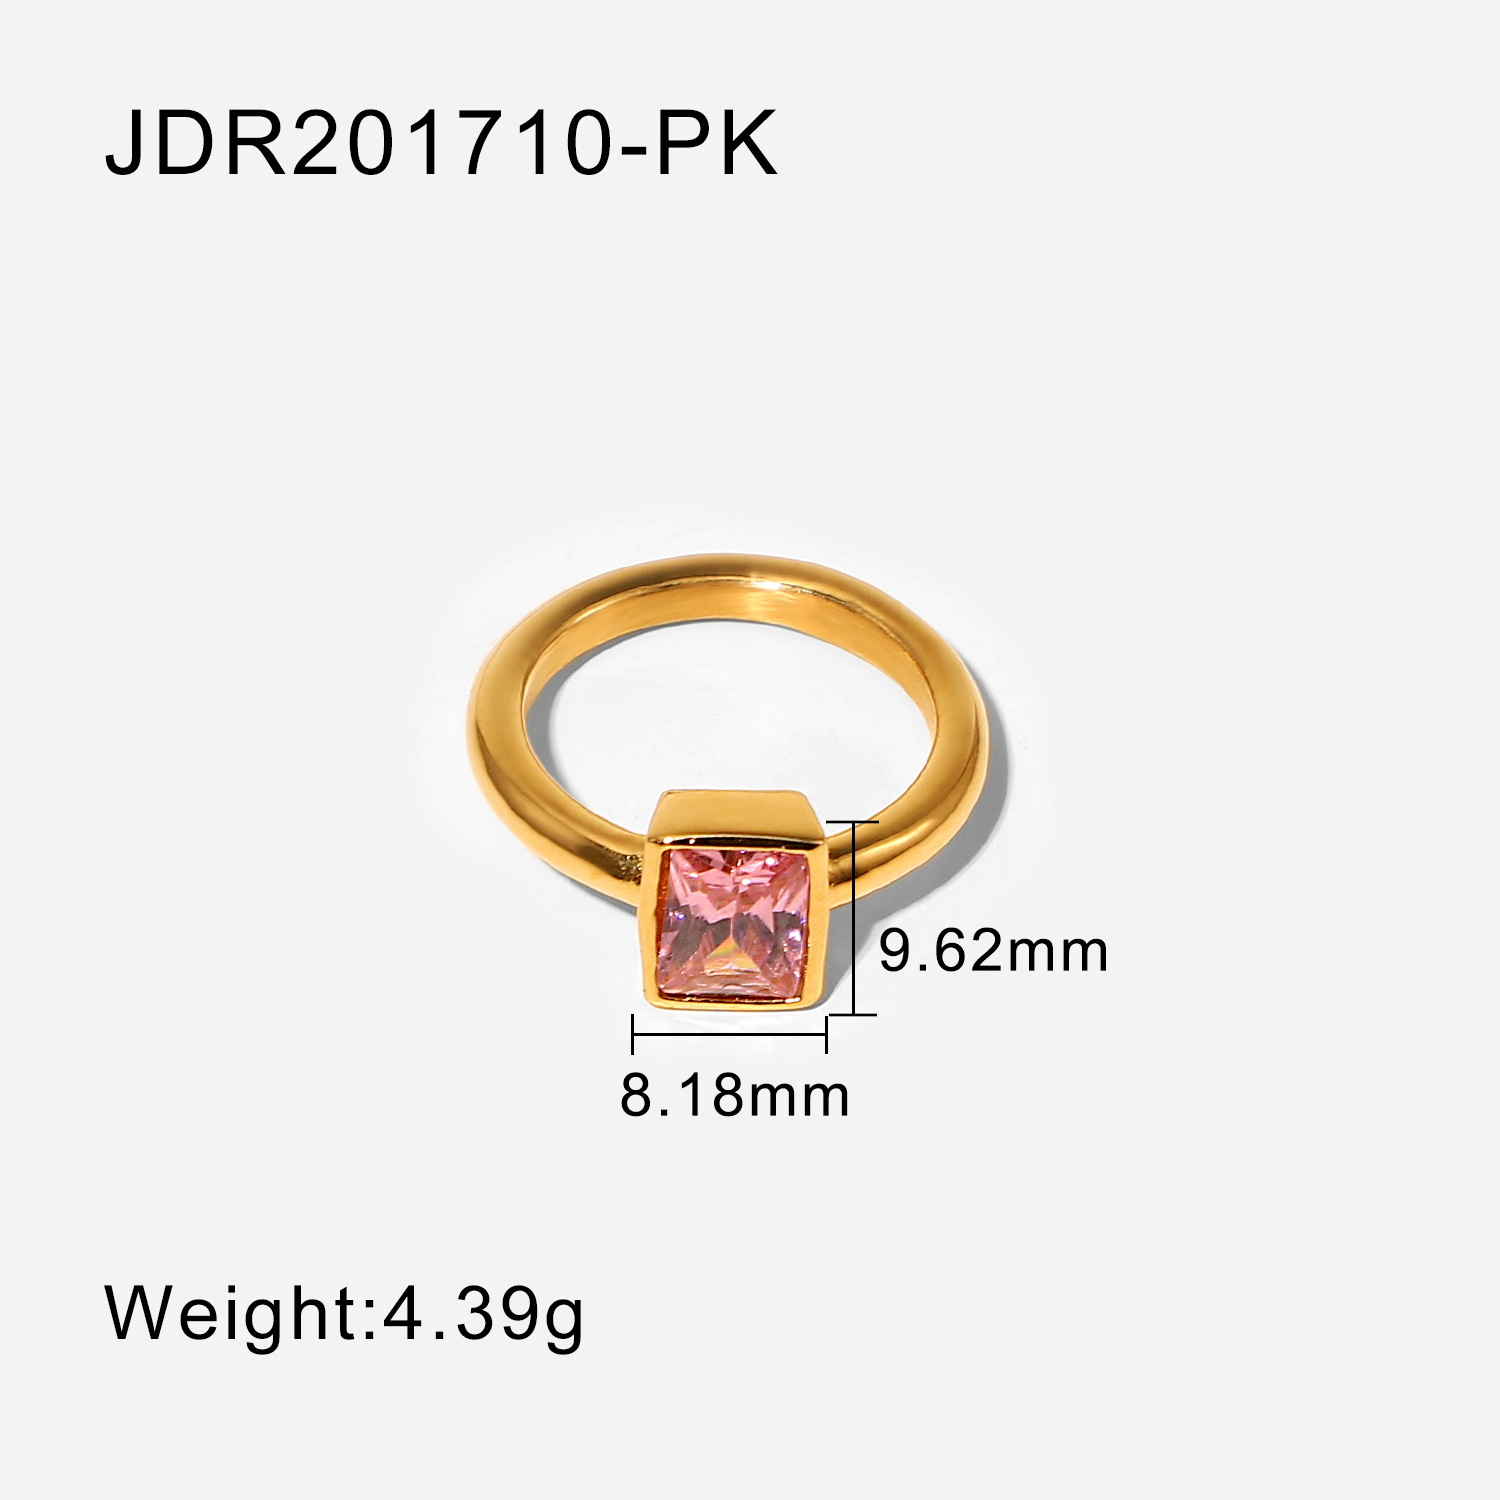 JDR201710-PK